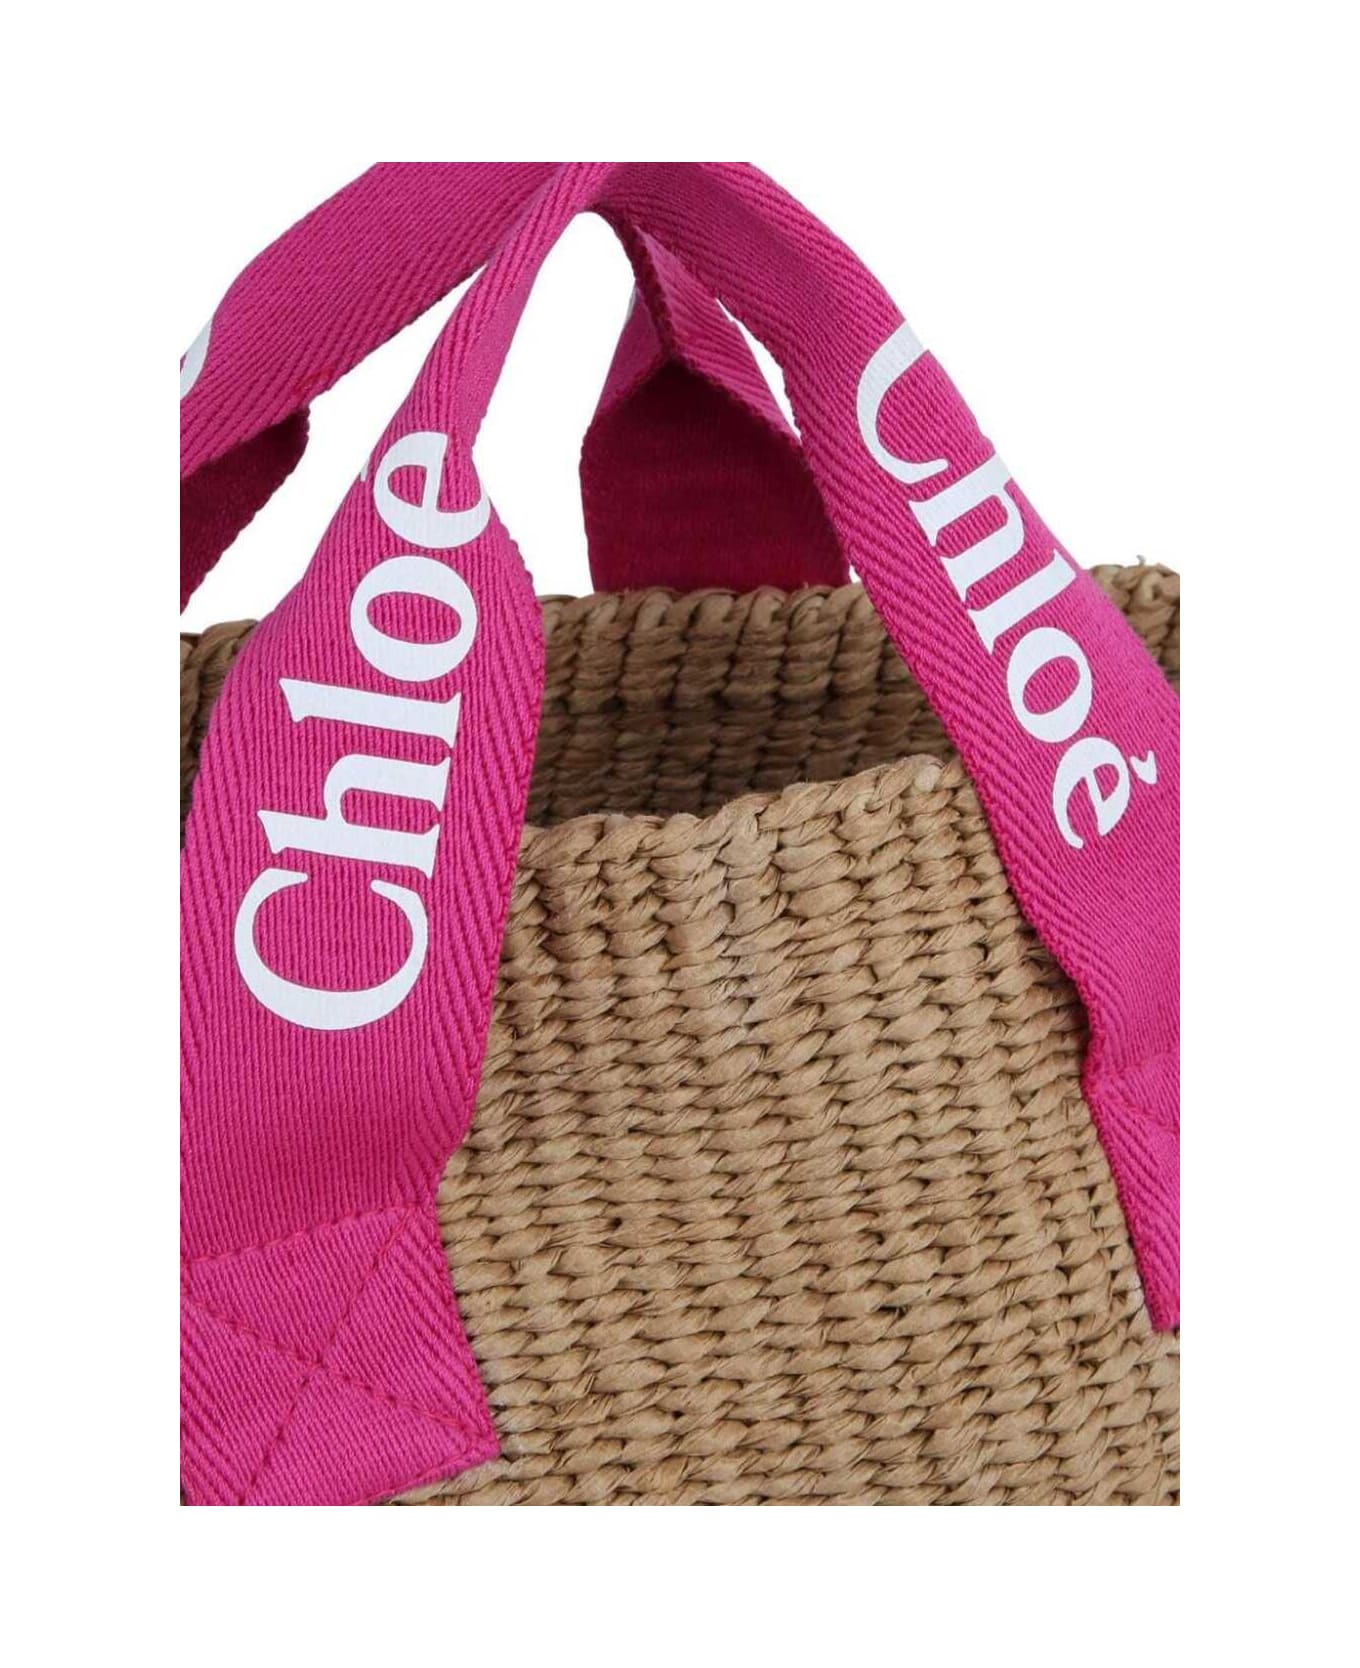 Chloé Beige Handbag With Branded Handles In Raffia Girl - Multicolor